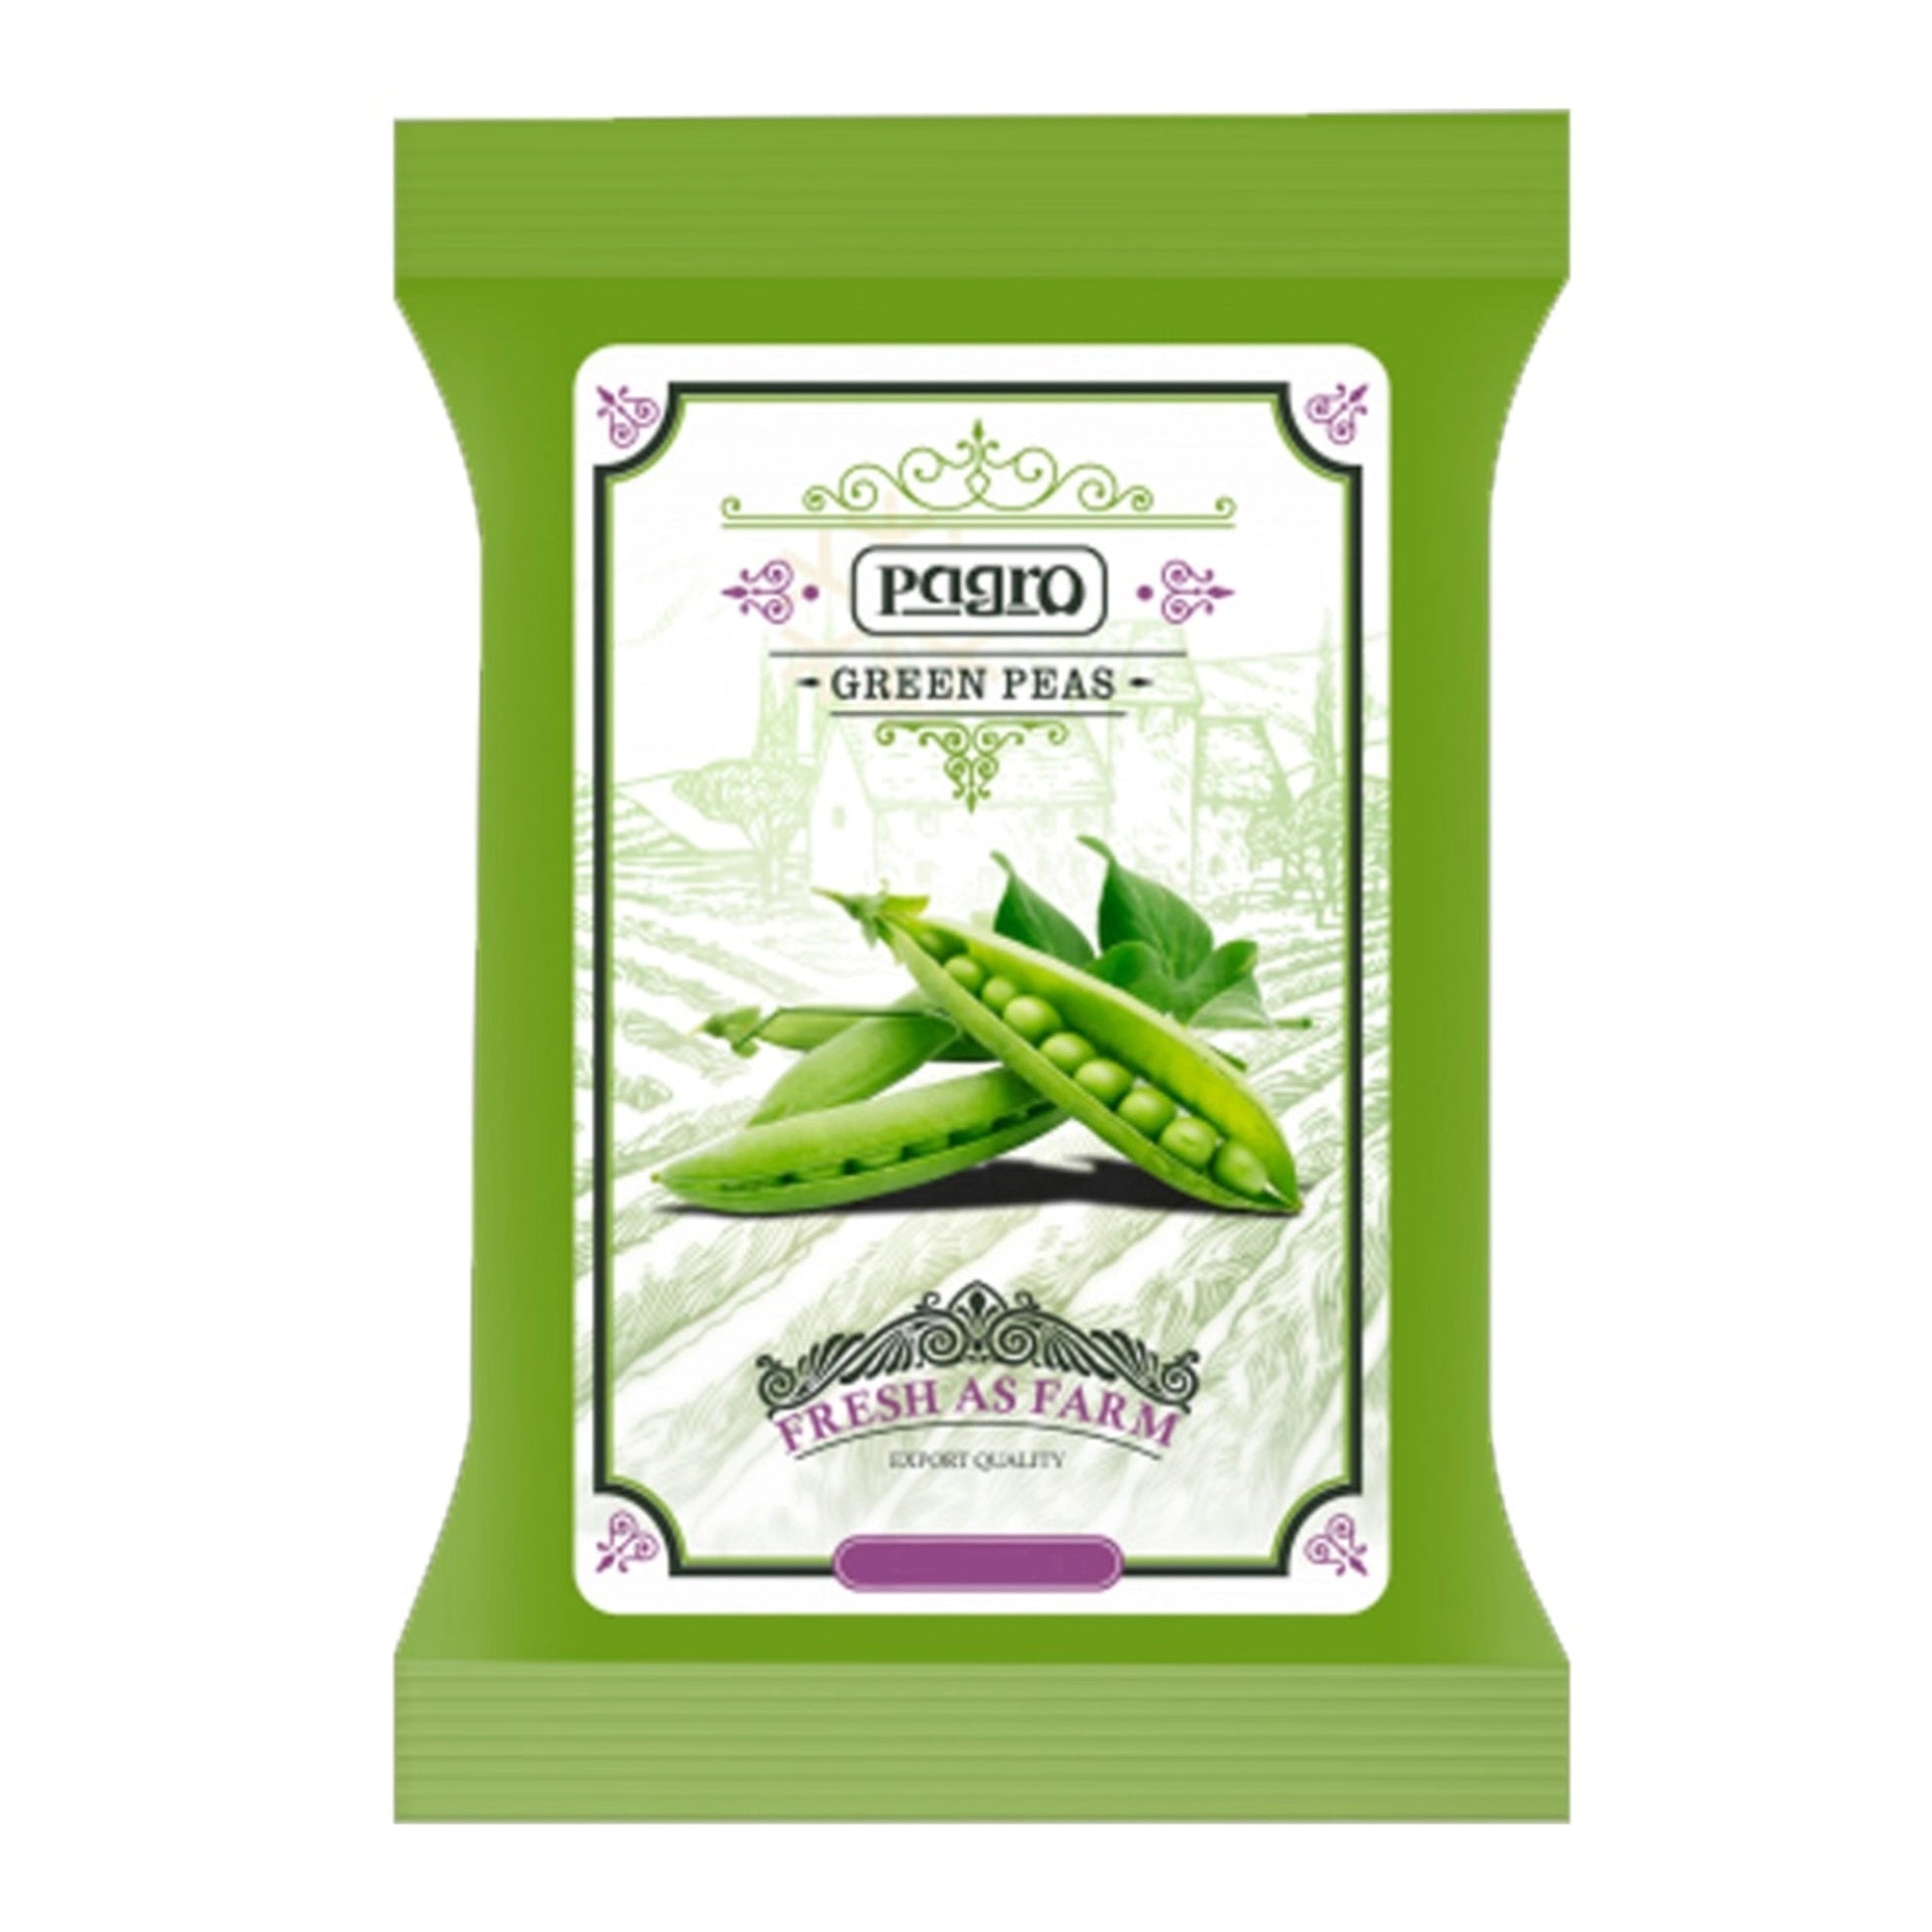 Buy Pagro Frozen Green Peas